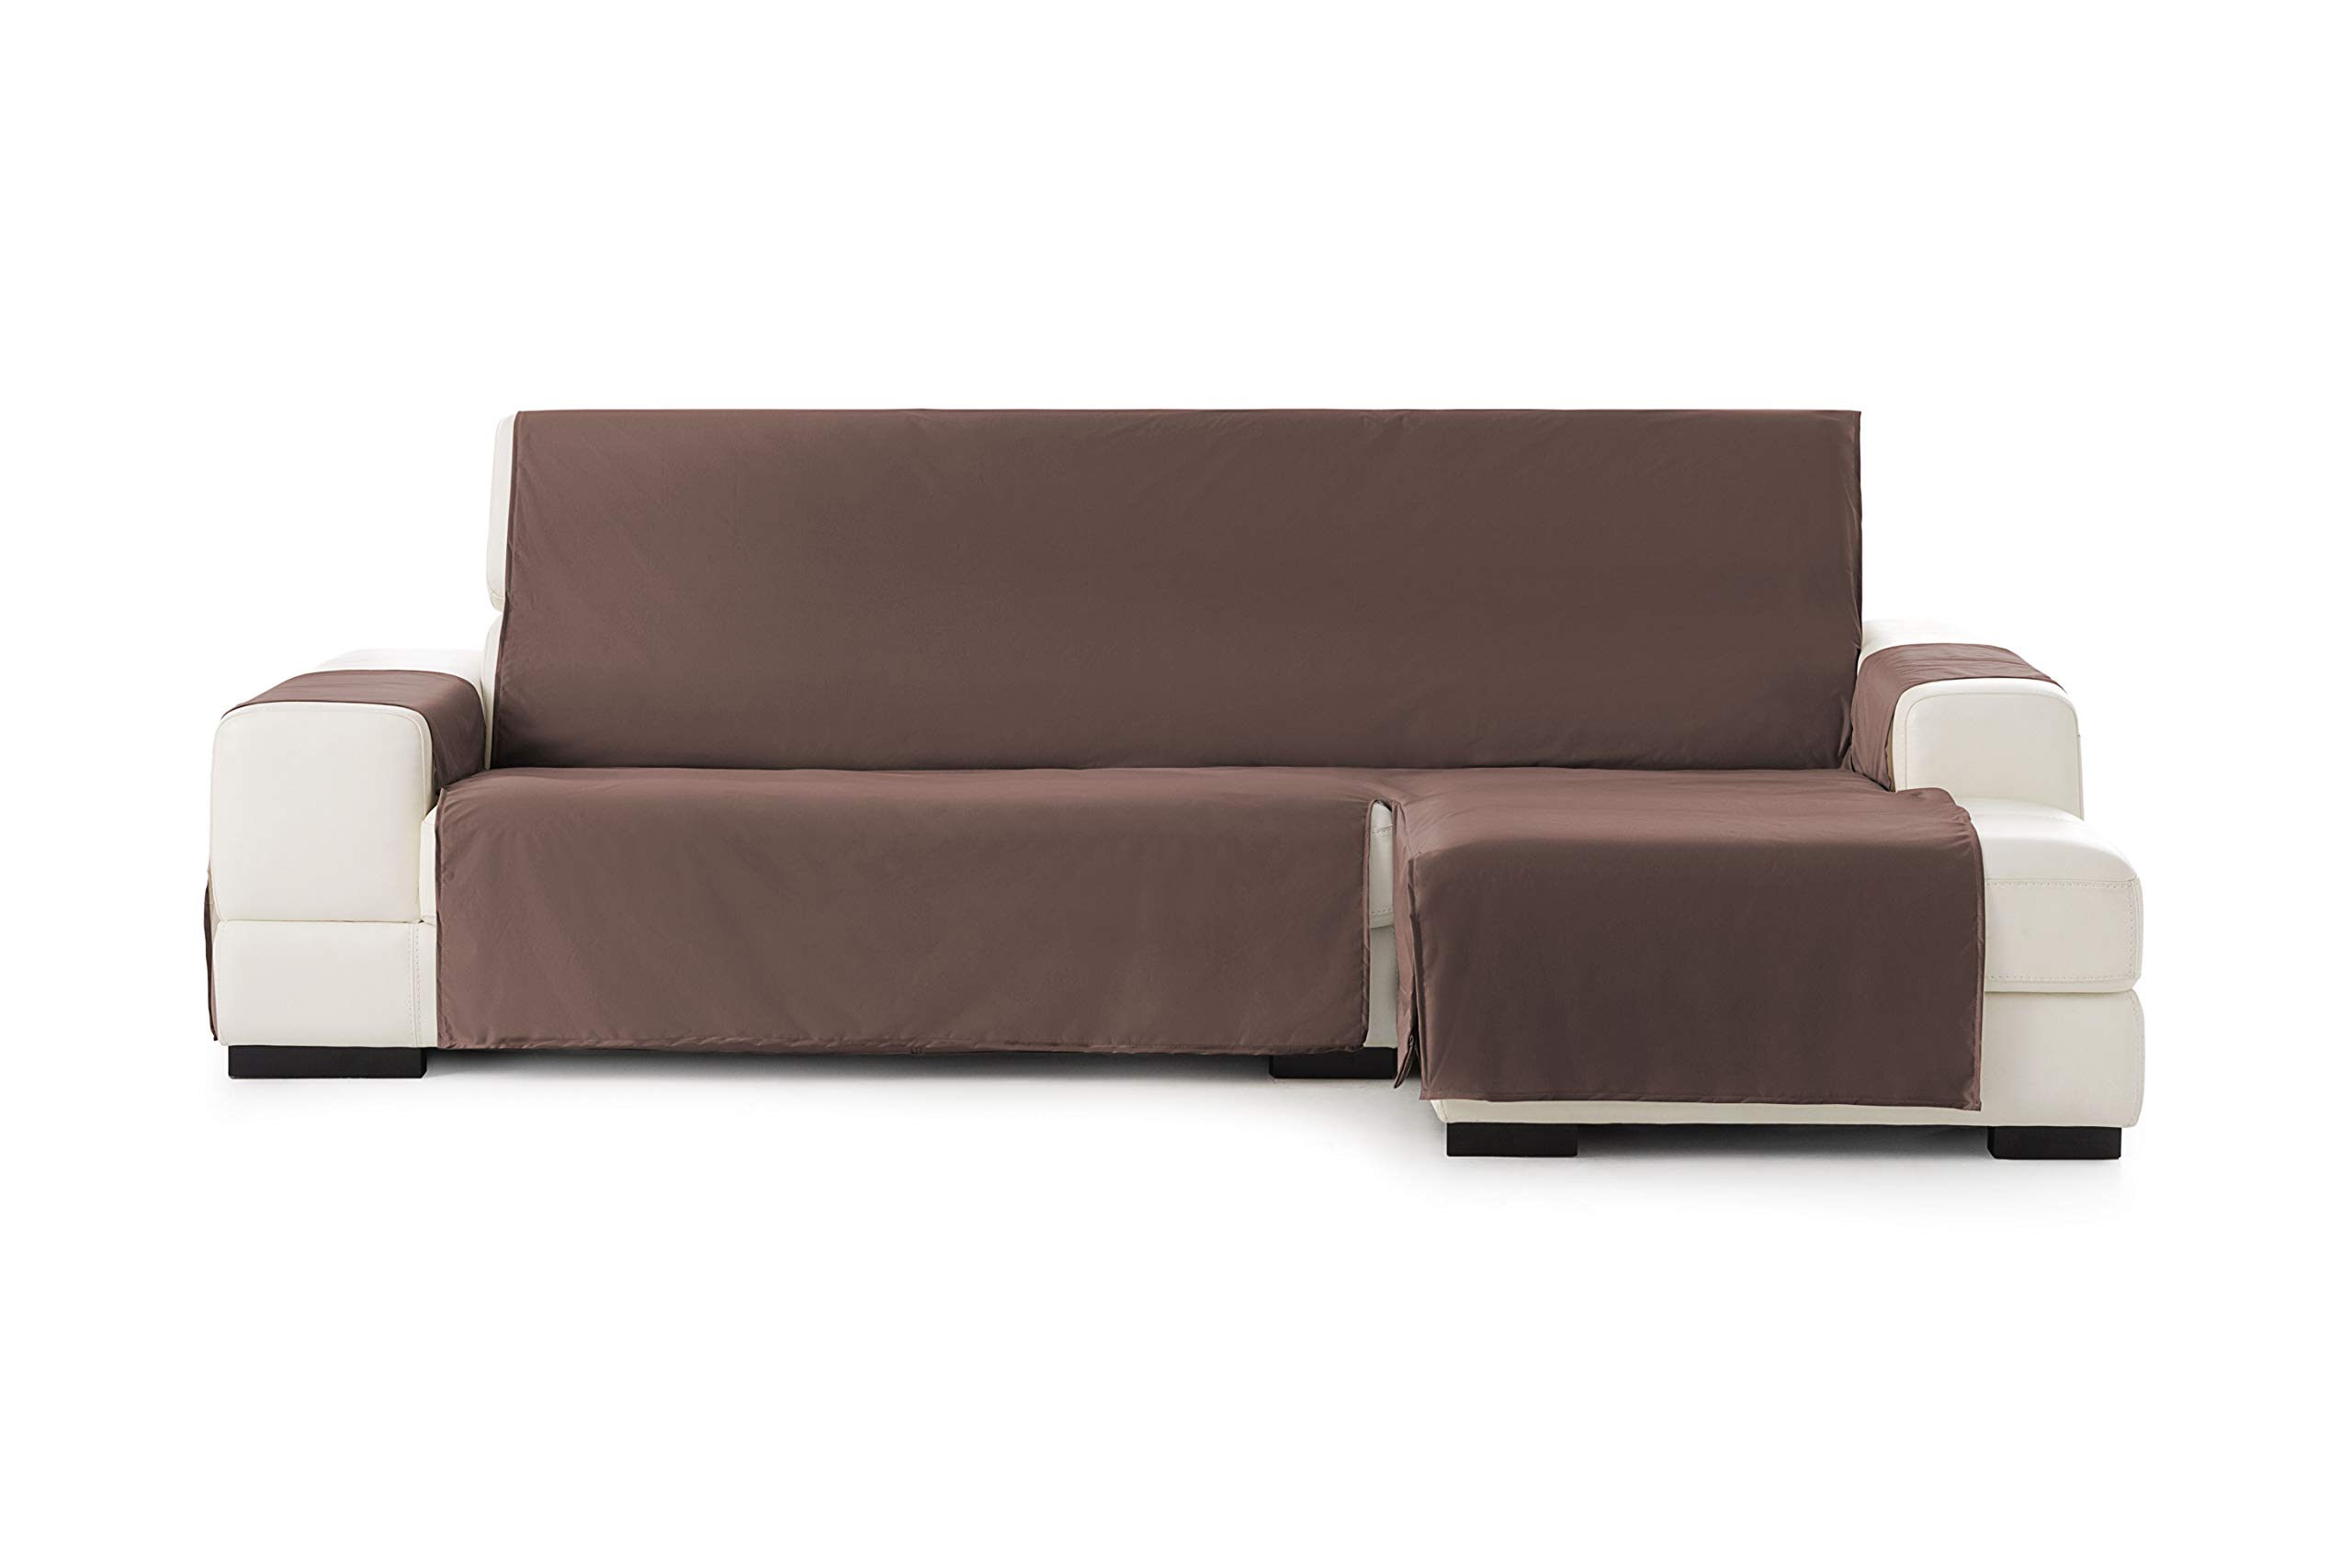 Eysa Somme Protect wasserdichte und atmungsaktive Sofa überwurf, 100% Polyester, braun, 290 cm